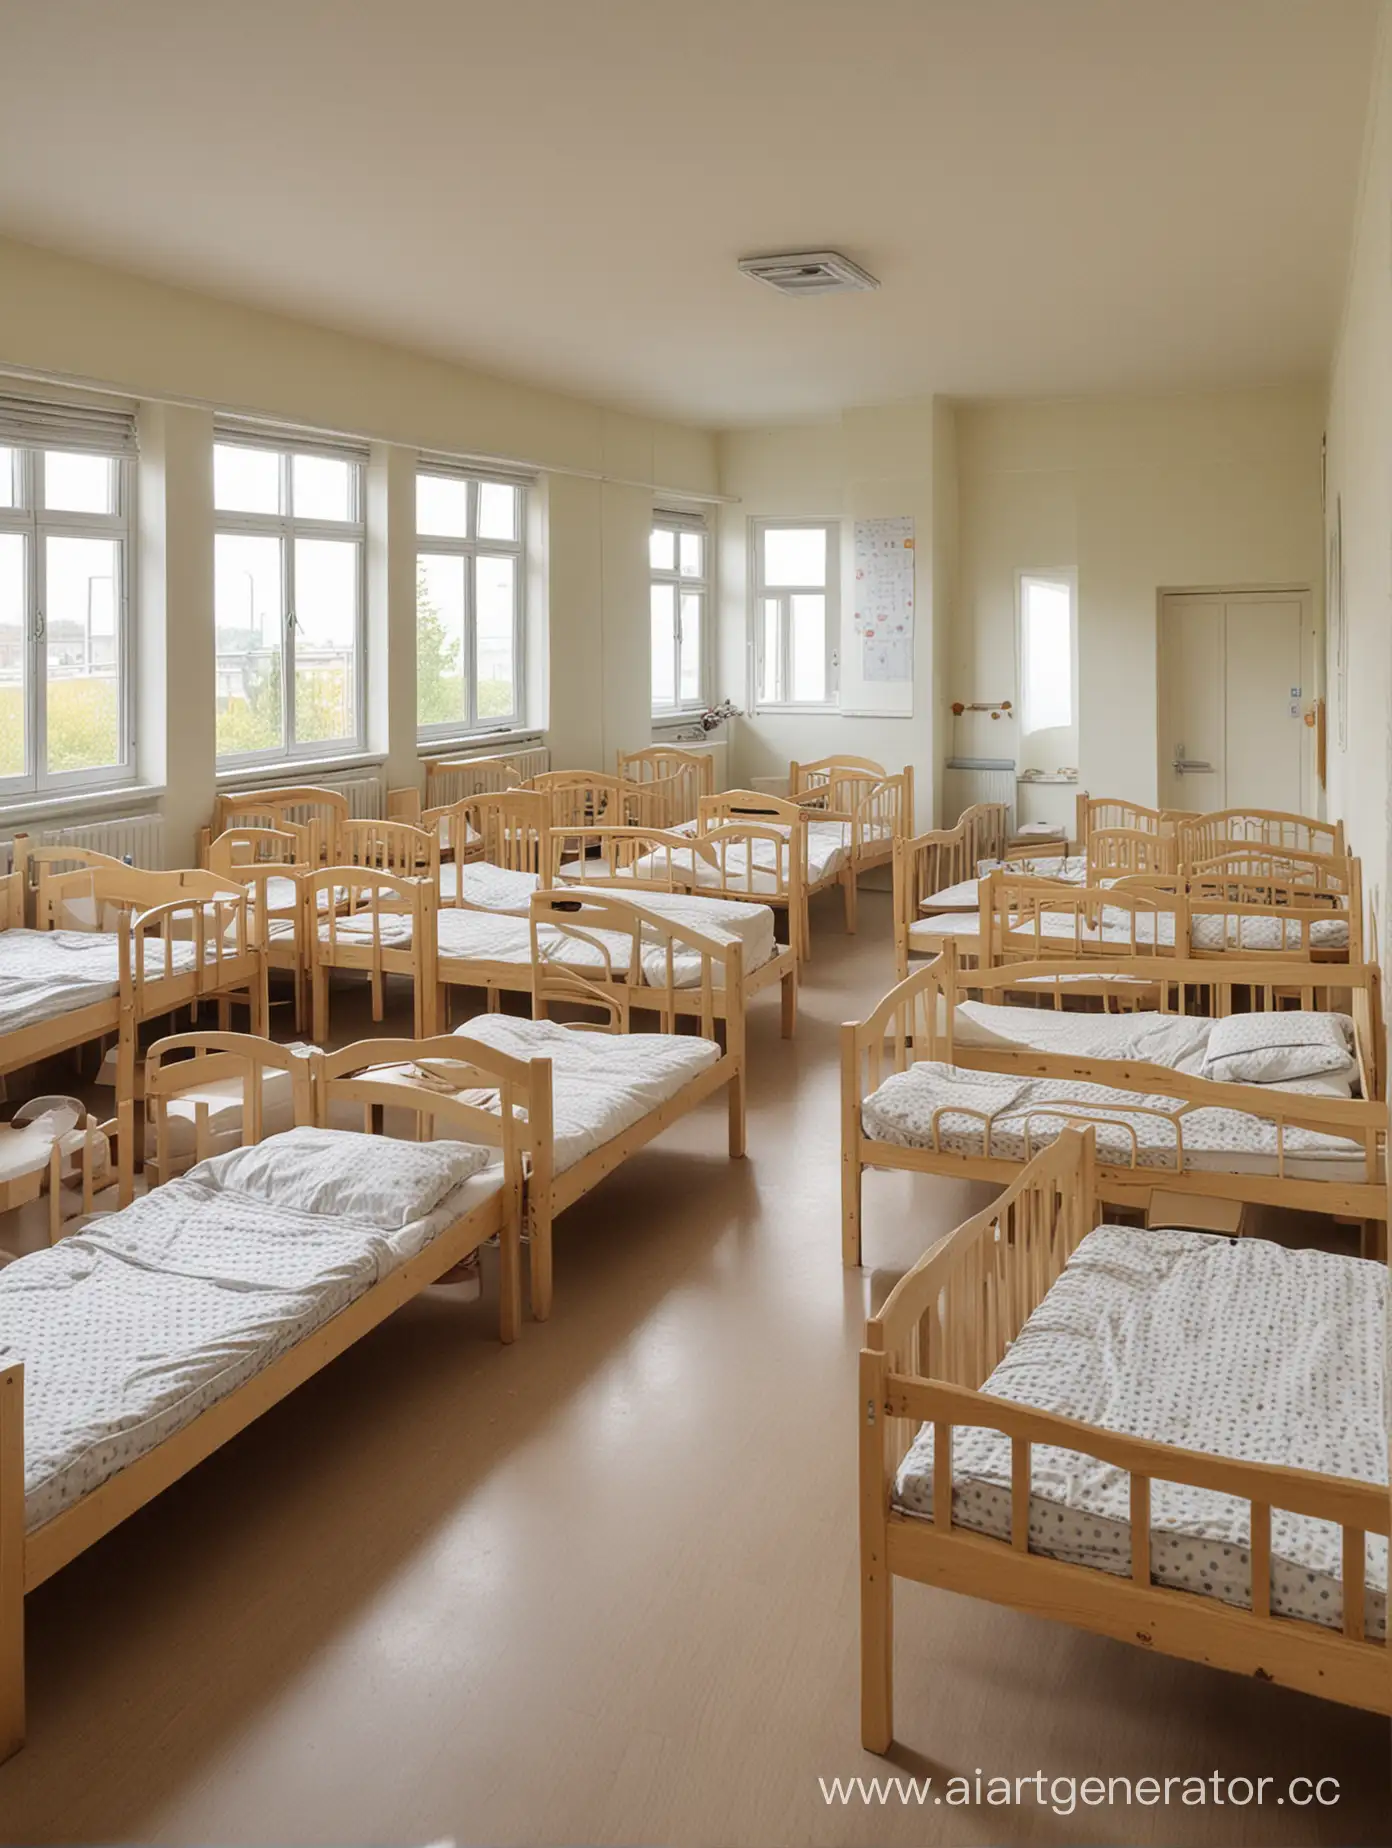 Empty-Kindergarten-Beds-Quiet-Classroom-Scene-with-Unoccupied-Beds